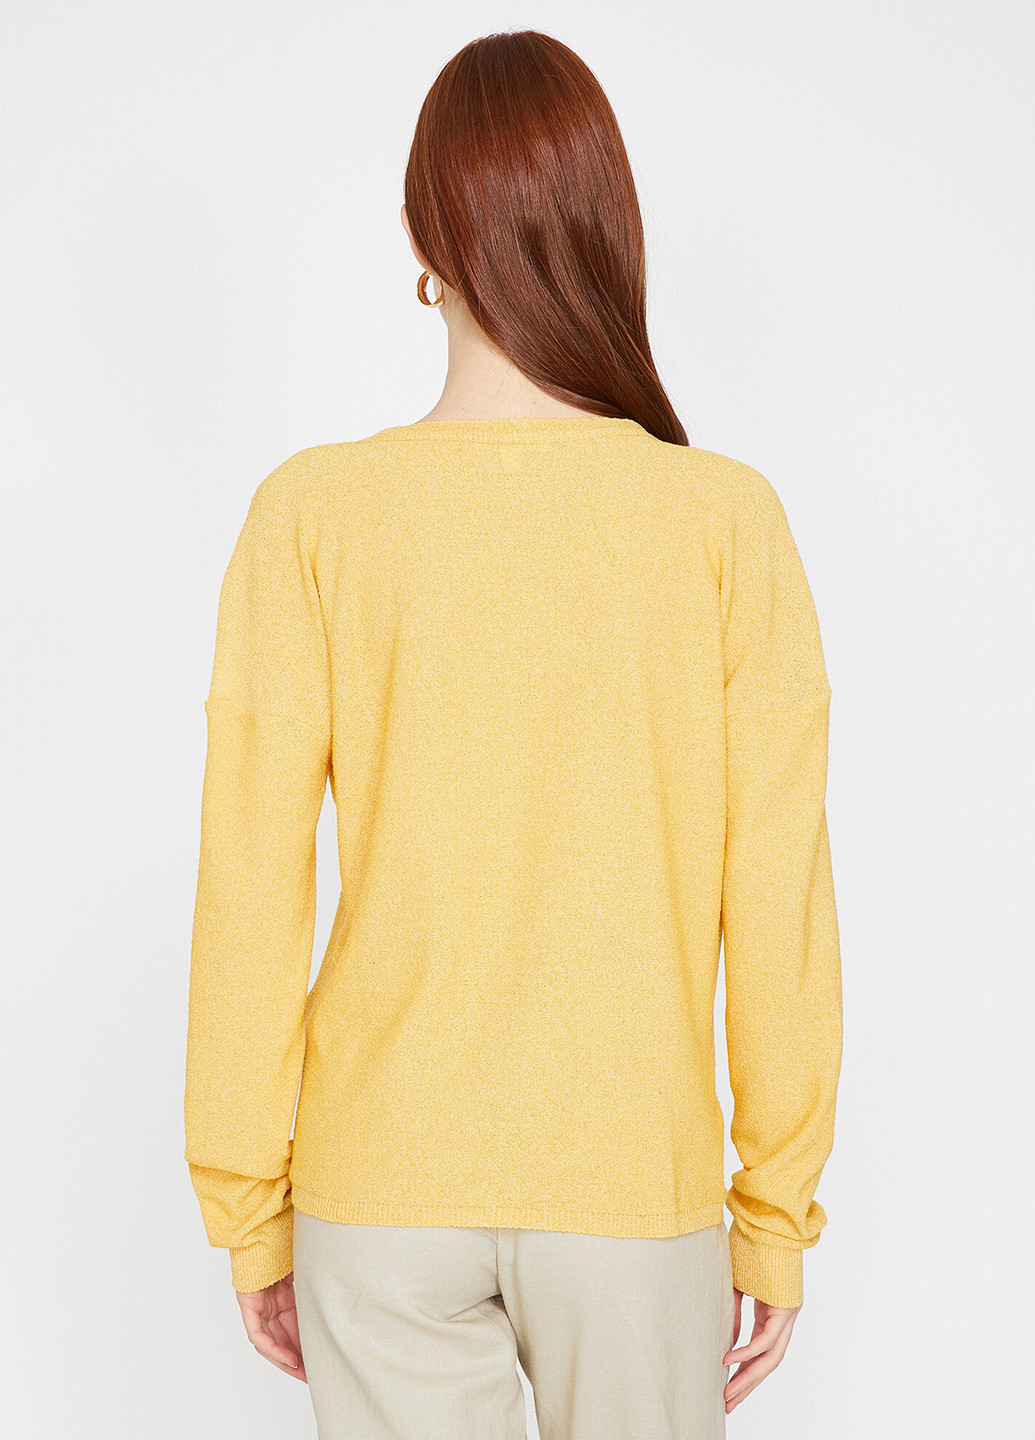 Желтый демисезонный пуловер пуловер KOTON